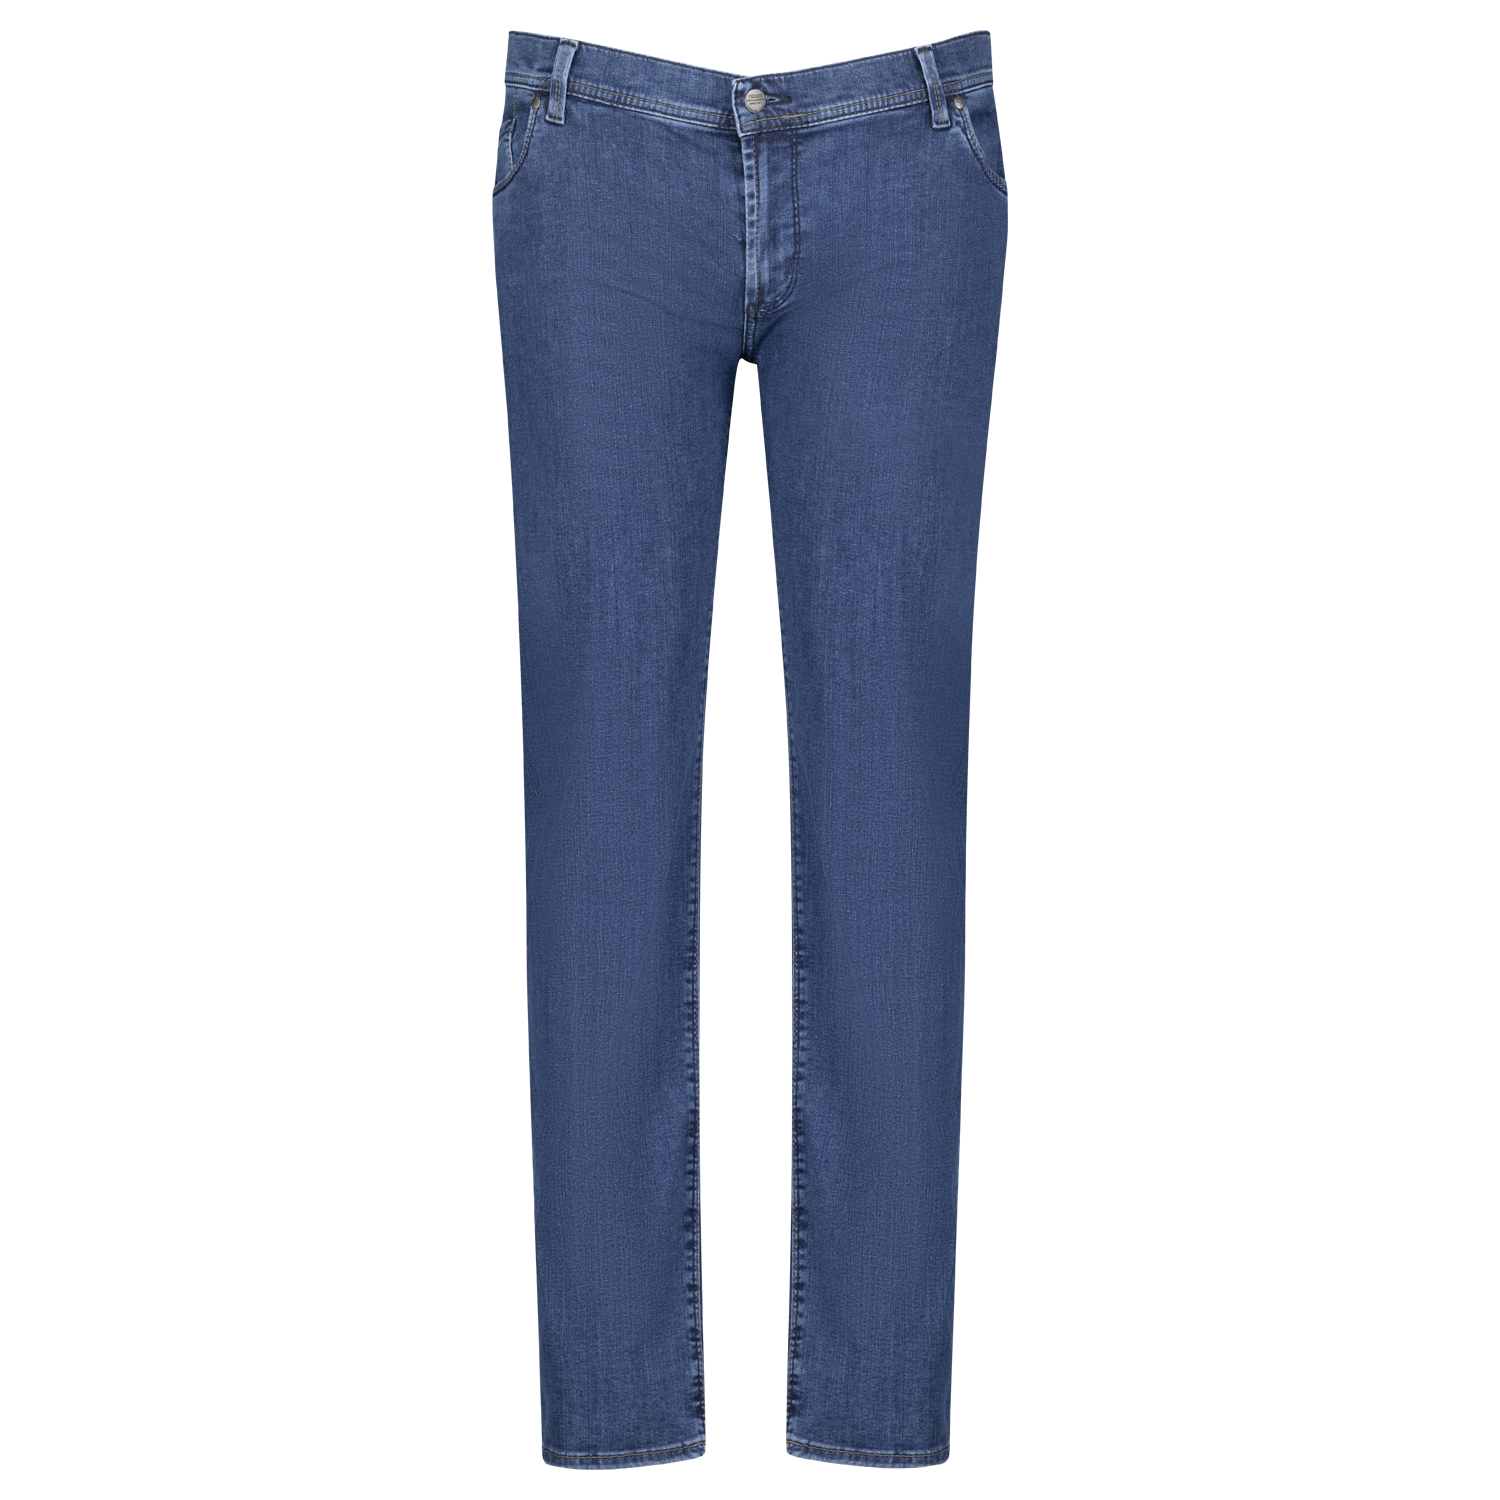 Pioneer Five Pocket Jeans untersetzte Größen Modell "Thomas" Megaflex in 28 - 40 blue stonewash